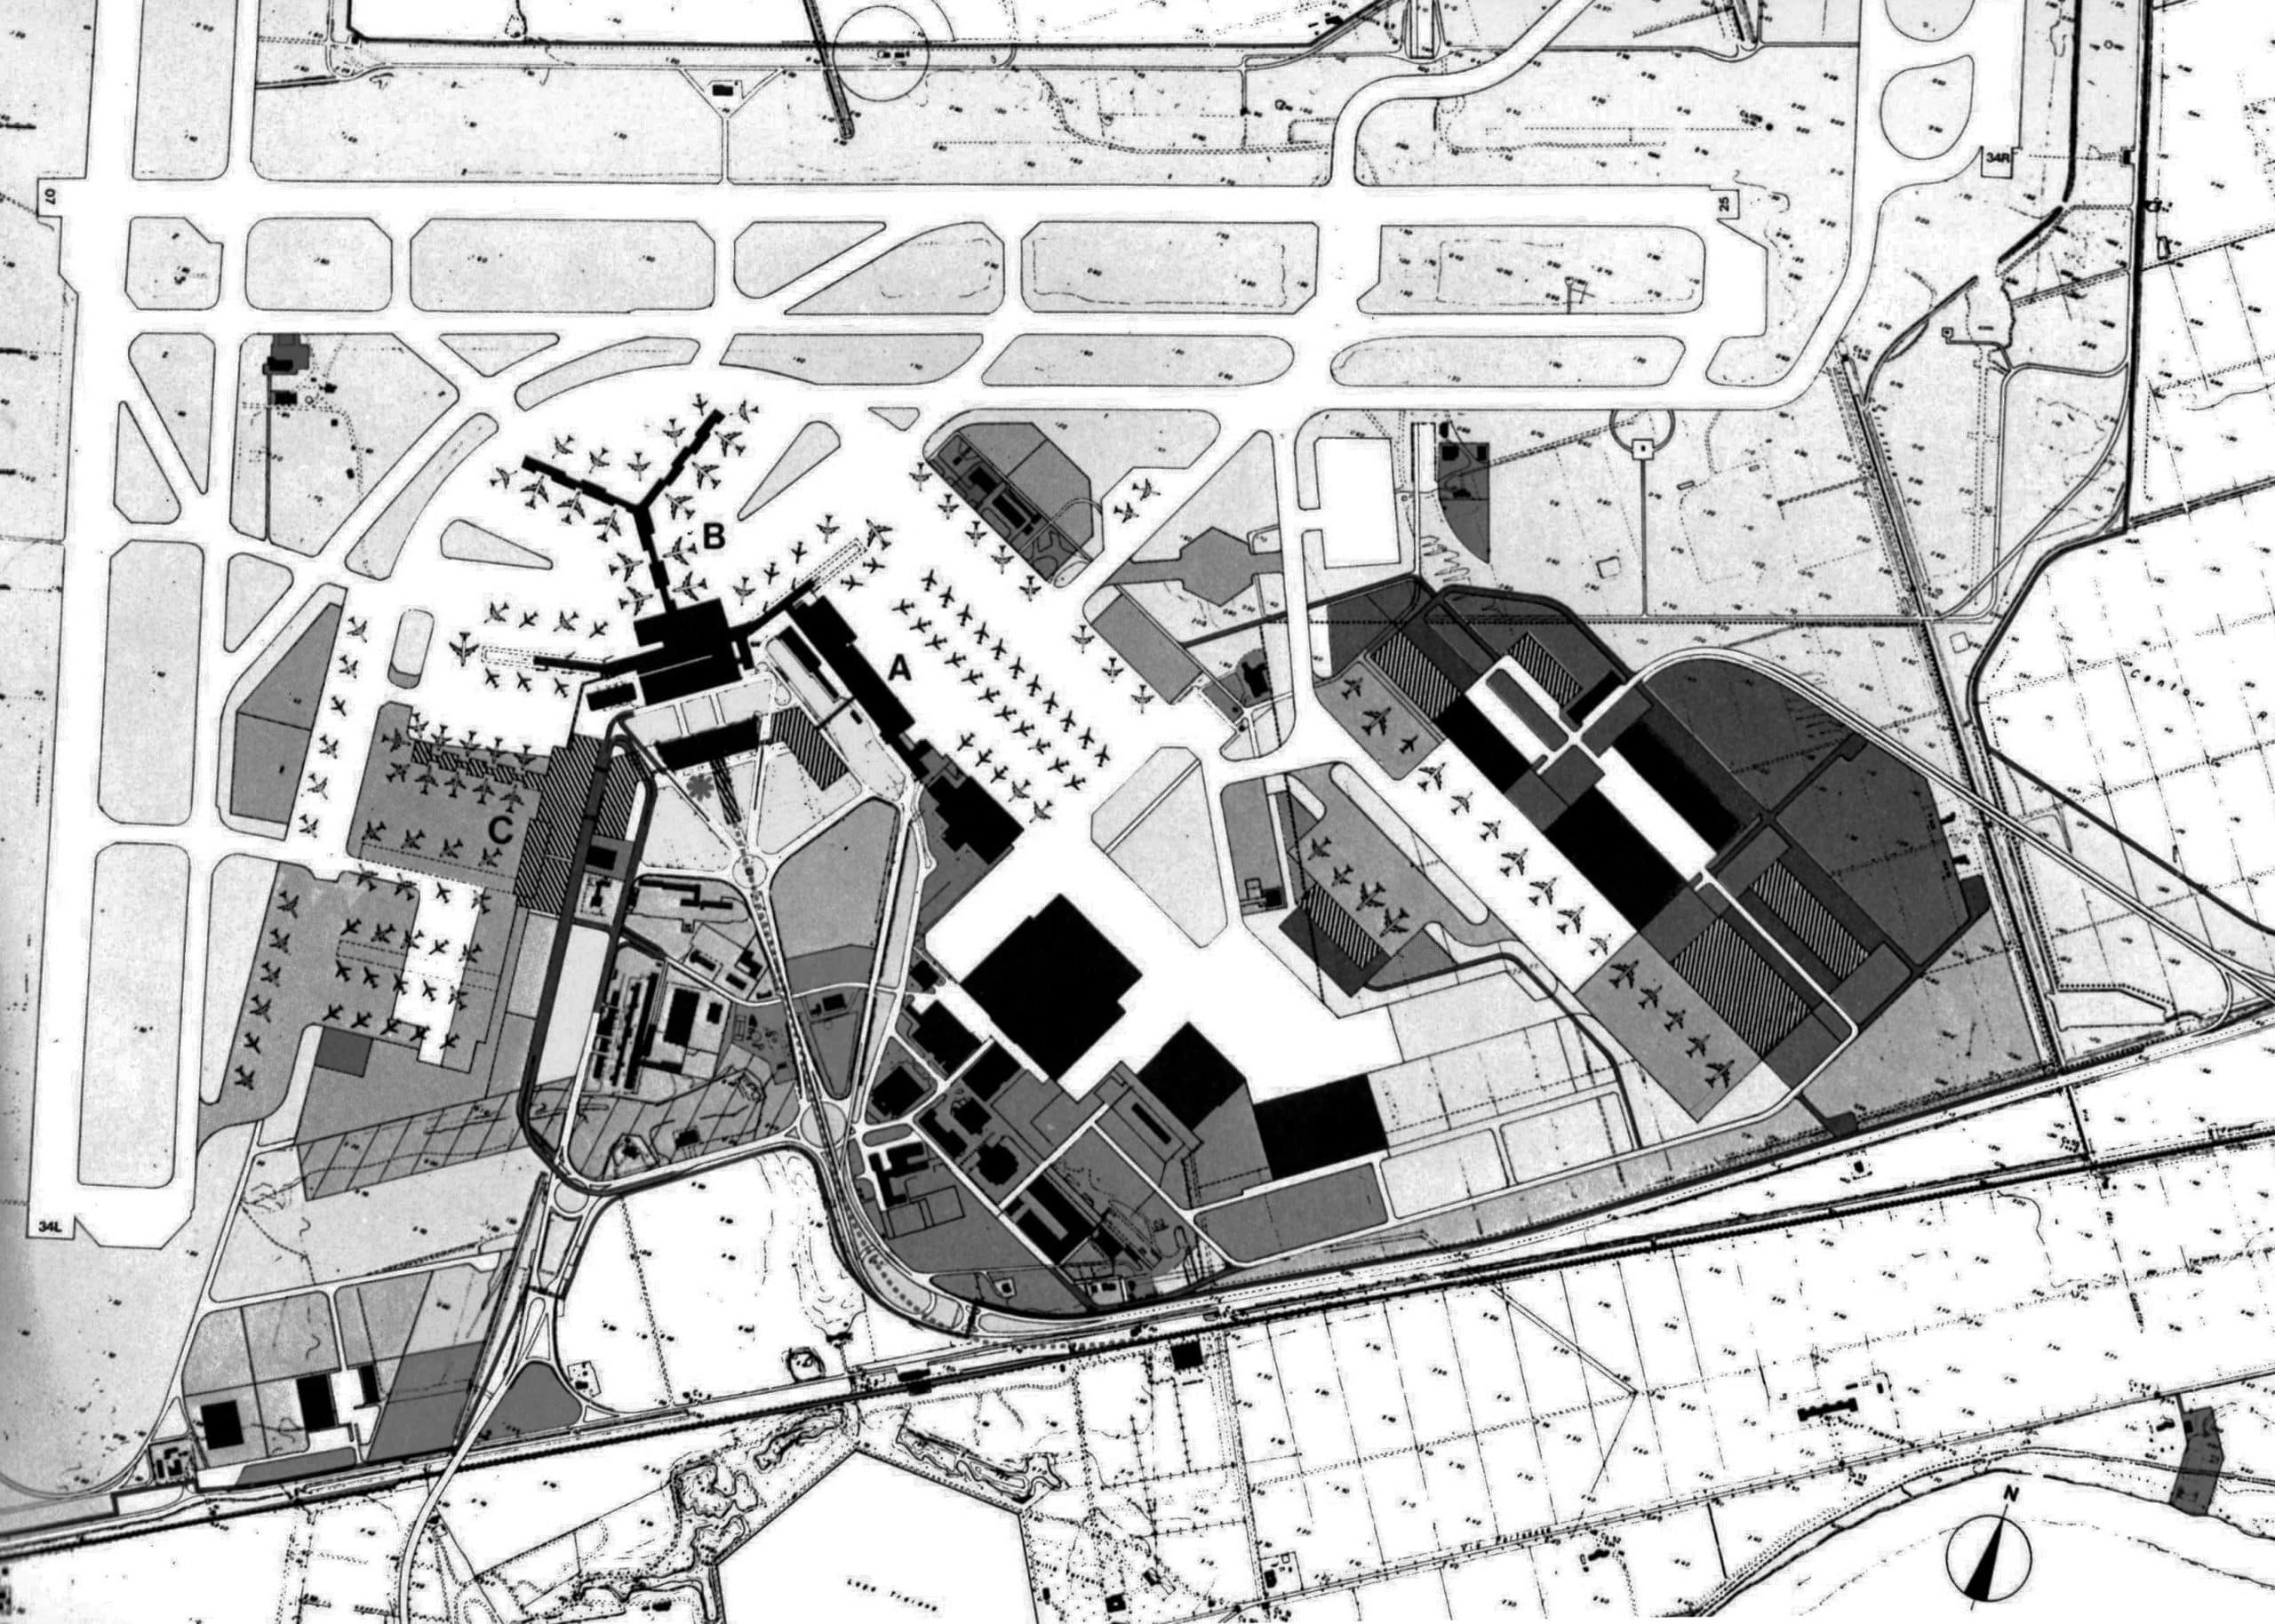 10 - Piano di ammodernamento e sviluppo a Breve Termine, Aeroporto “L. Da Vinci”, Fiumicino (RM), per ADR - Planimetria generale